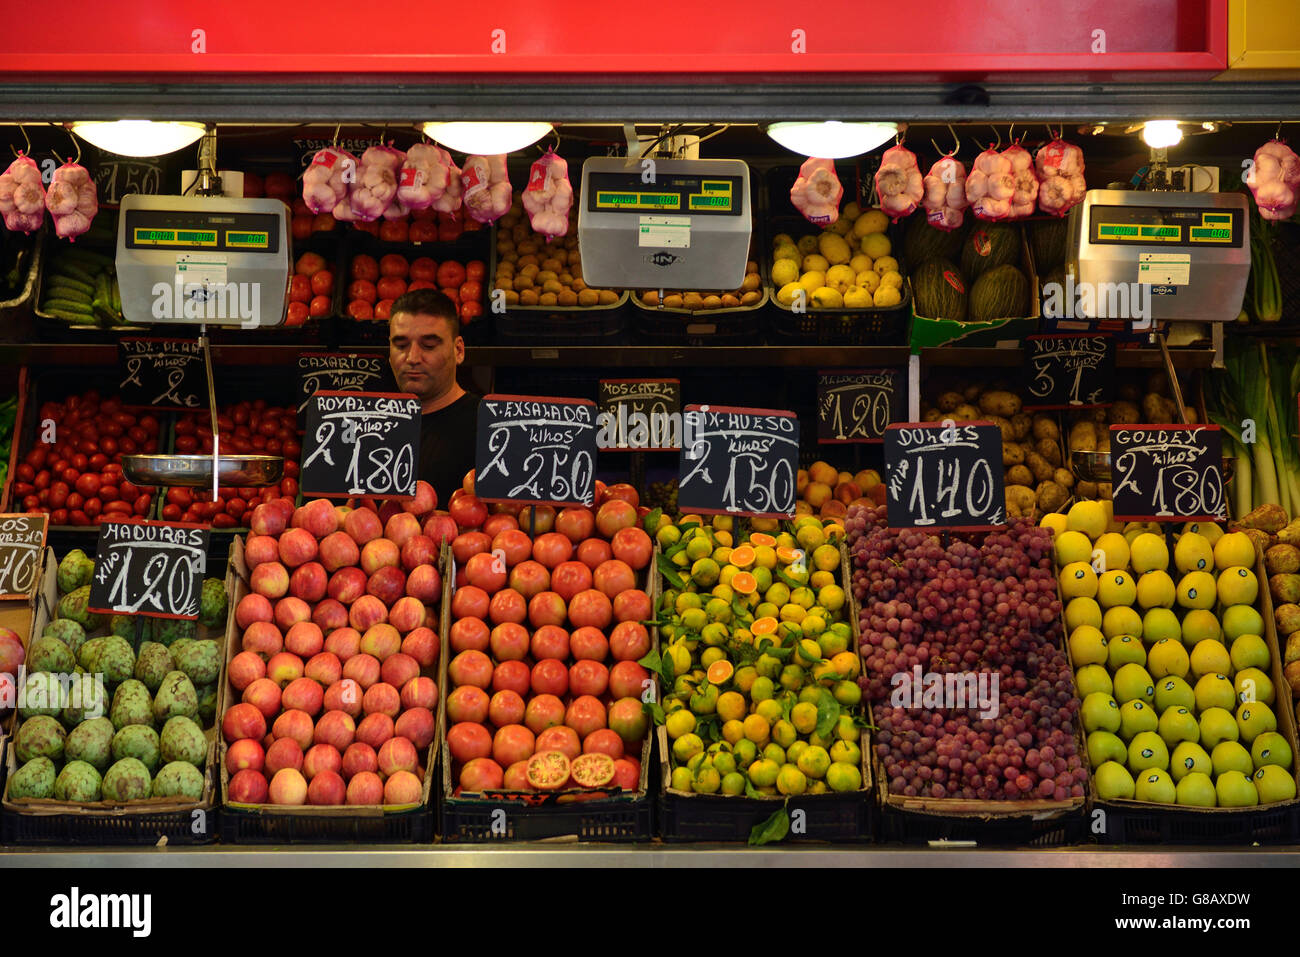 fruiterer, covered market Mercado de Atarazanas, Malaga, Costa del Sol, Andalusia, Spain Stock Photo